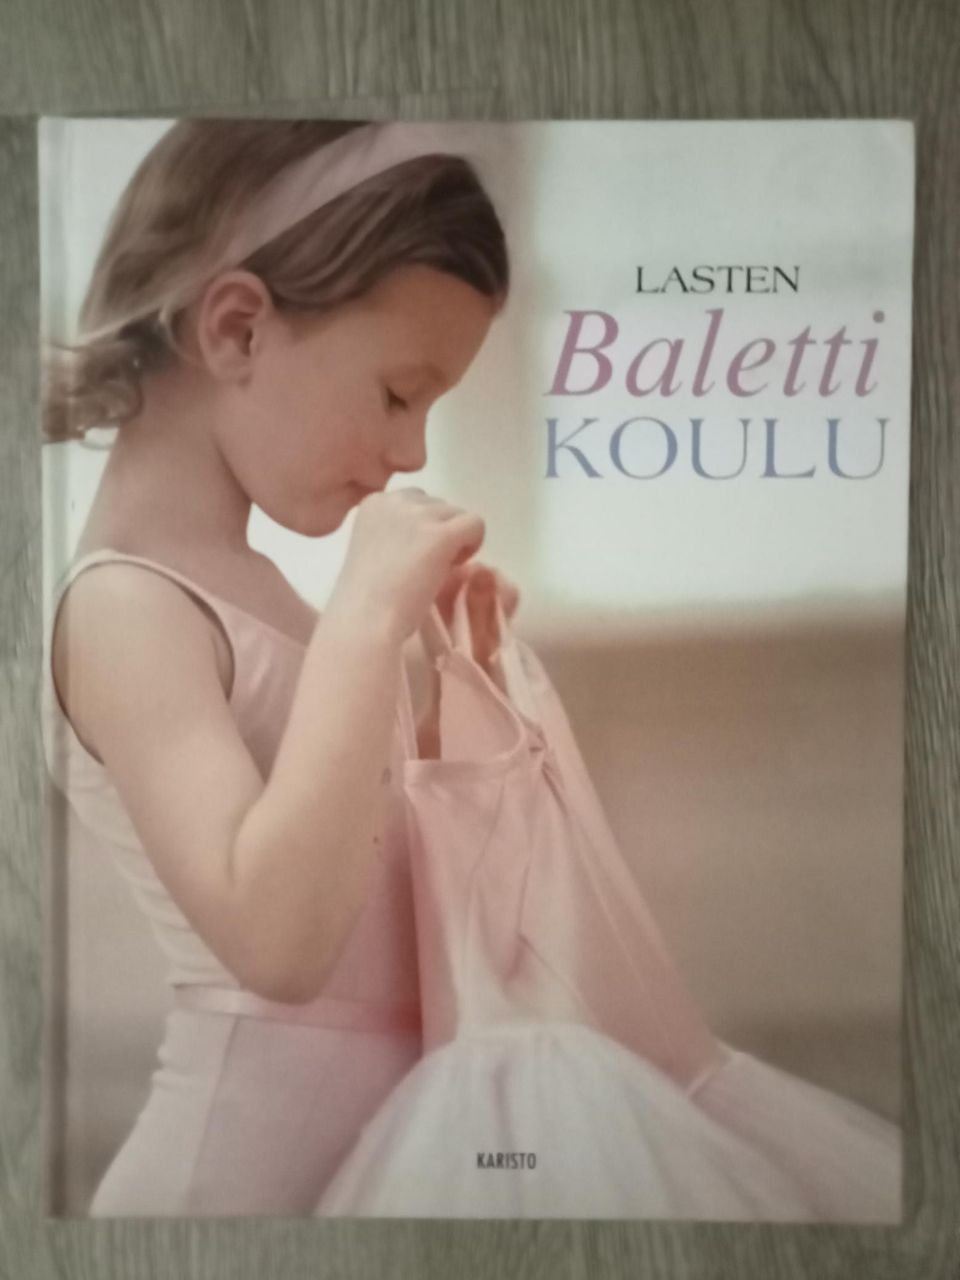 Lasten Balettikoulu